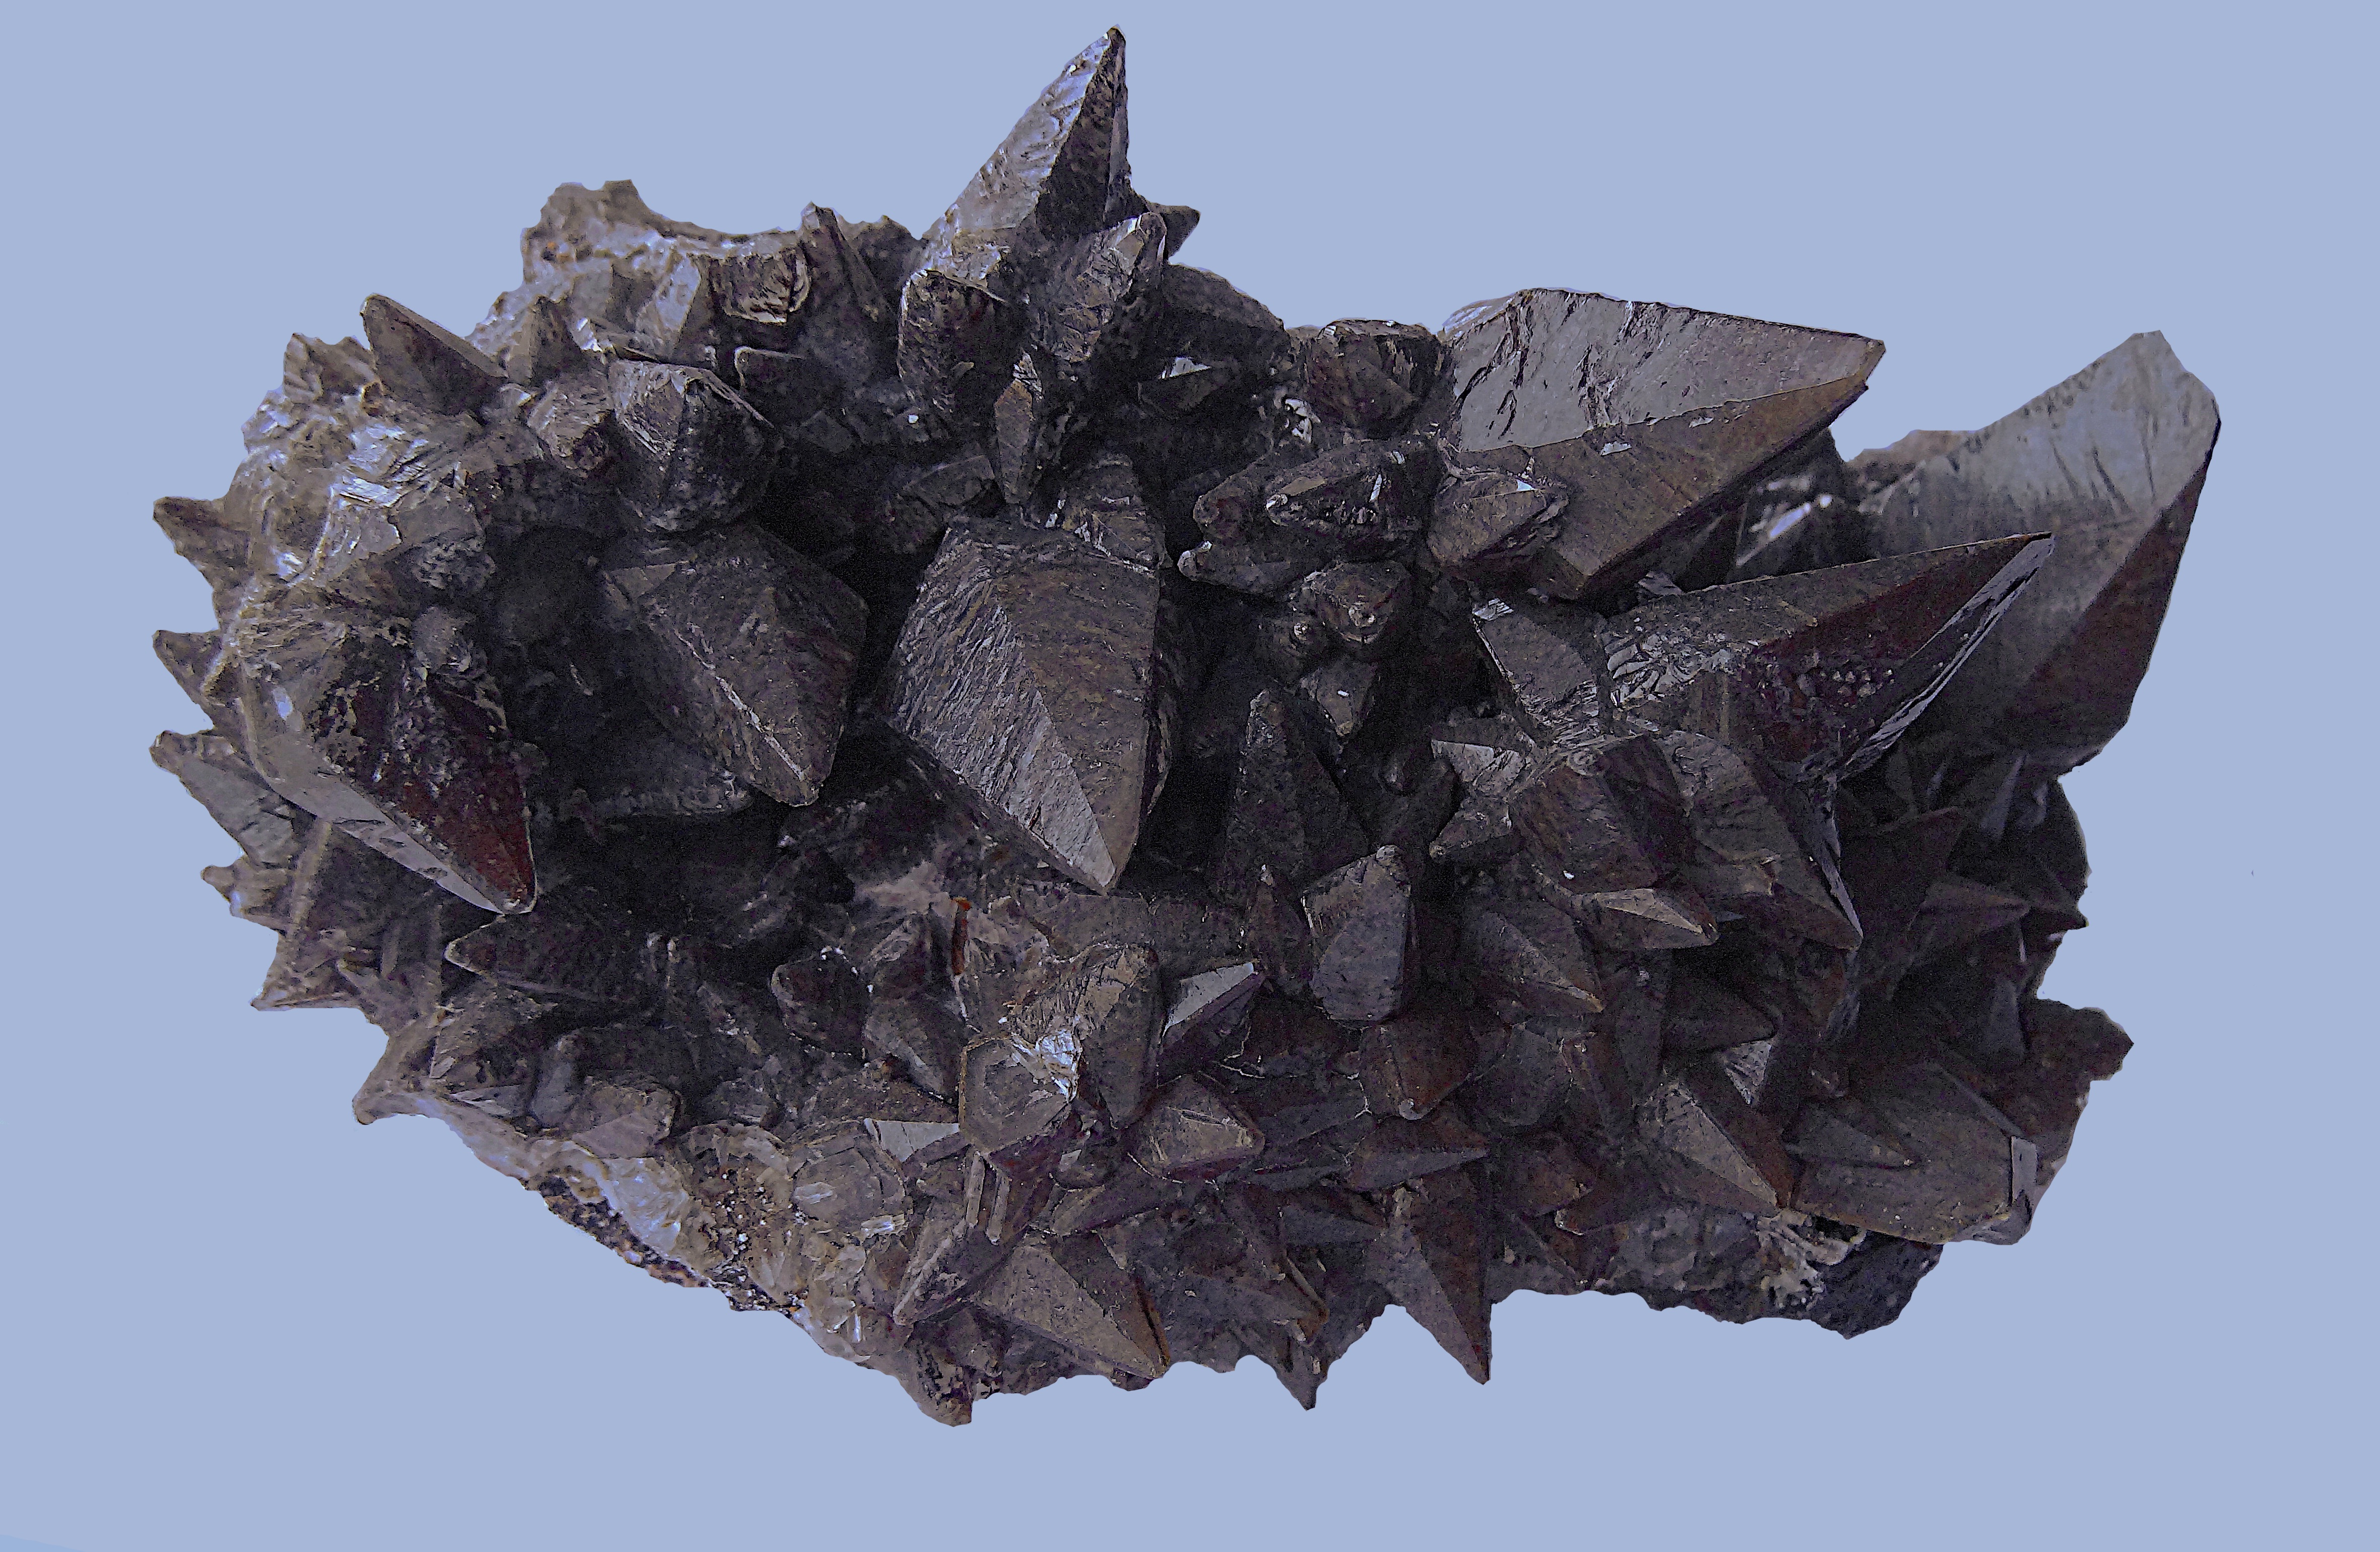 Друза кристаллов кальцита. Дашкесан, Азеррбайджан. Размер 10 см. Фото Морошкина В.В.